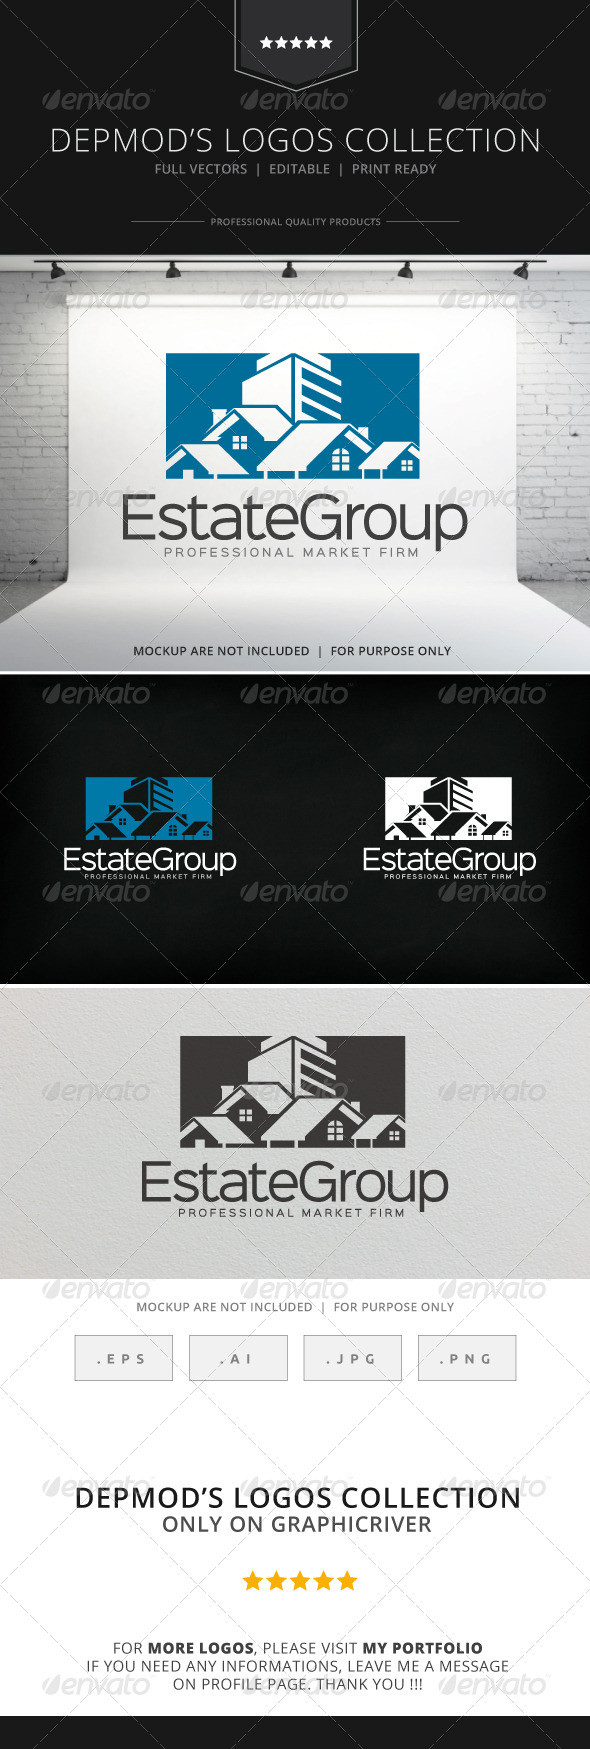 Estate group v02 logo